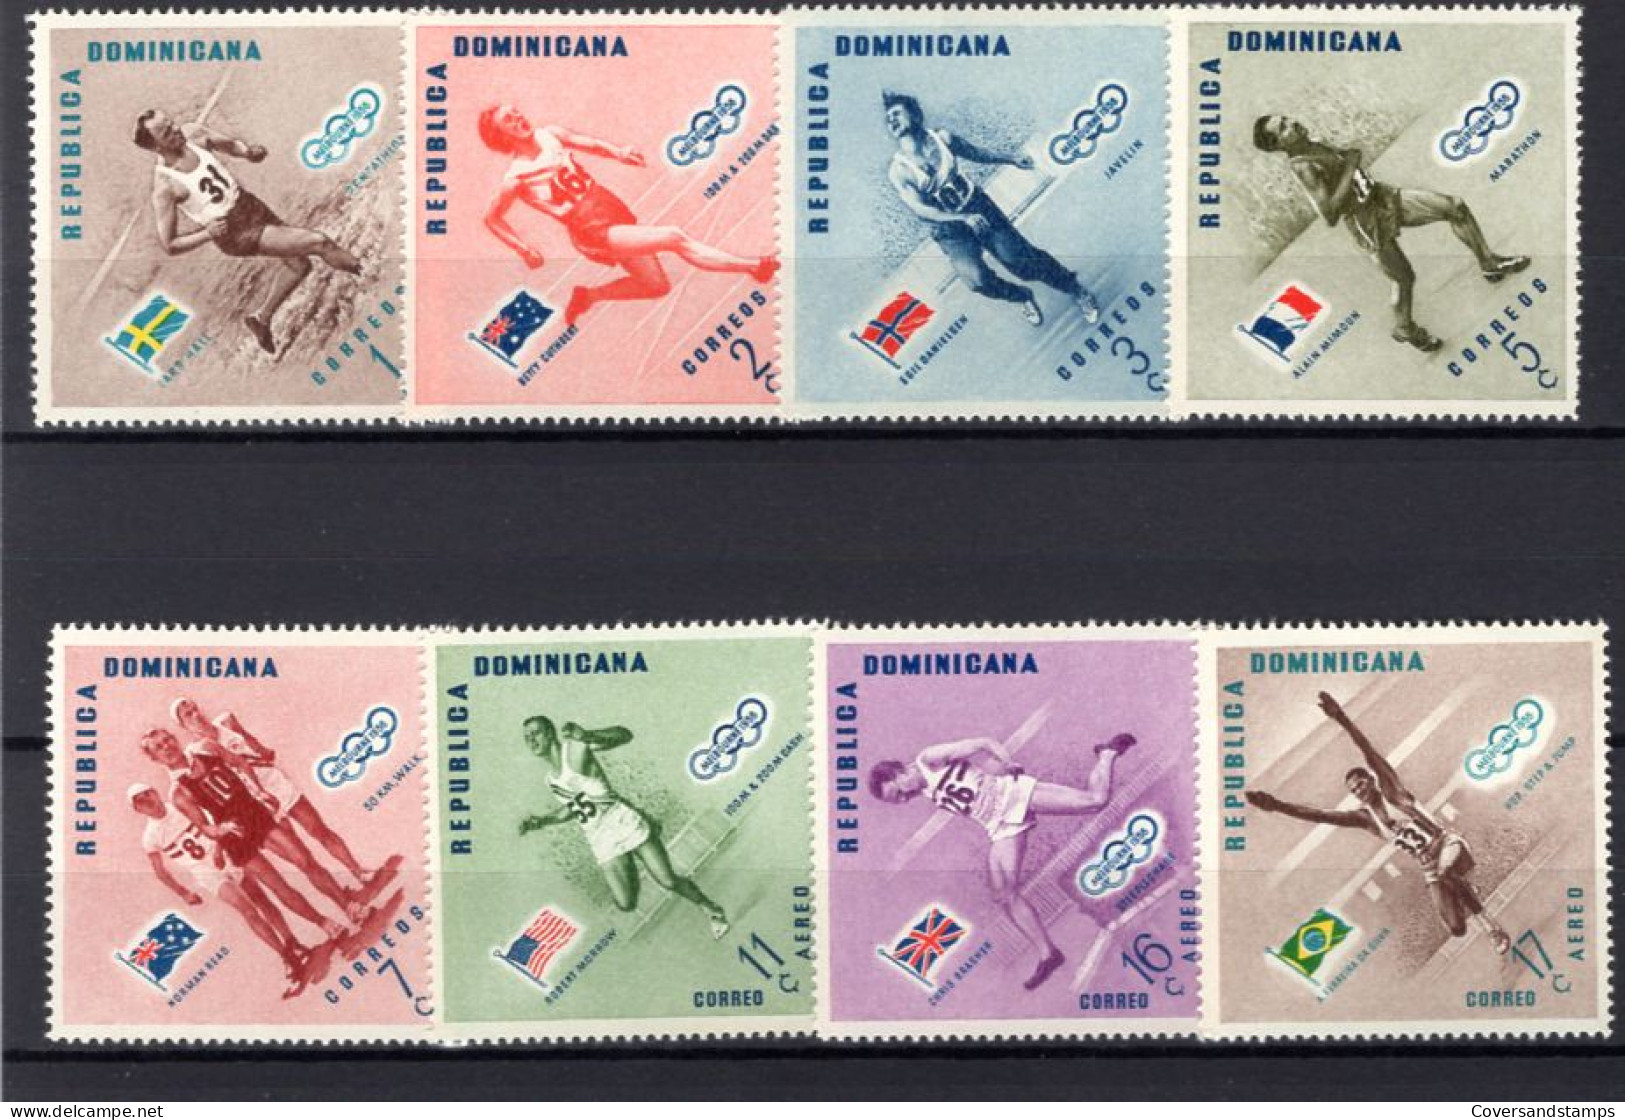  Republica Dominicana - Melbourne 1956 - Verano 1956: Melbourne